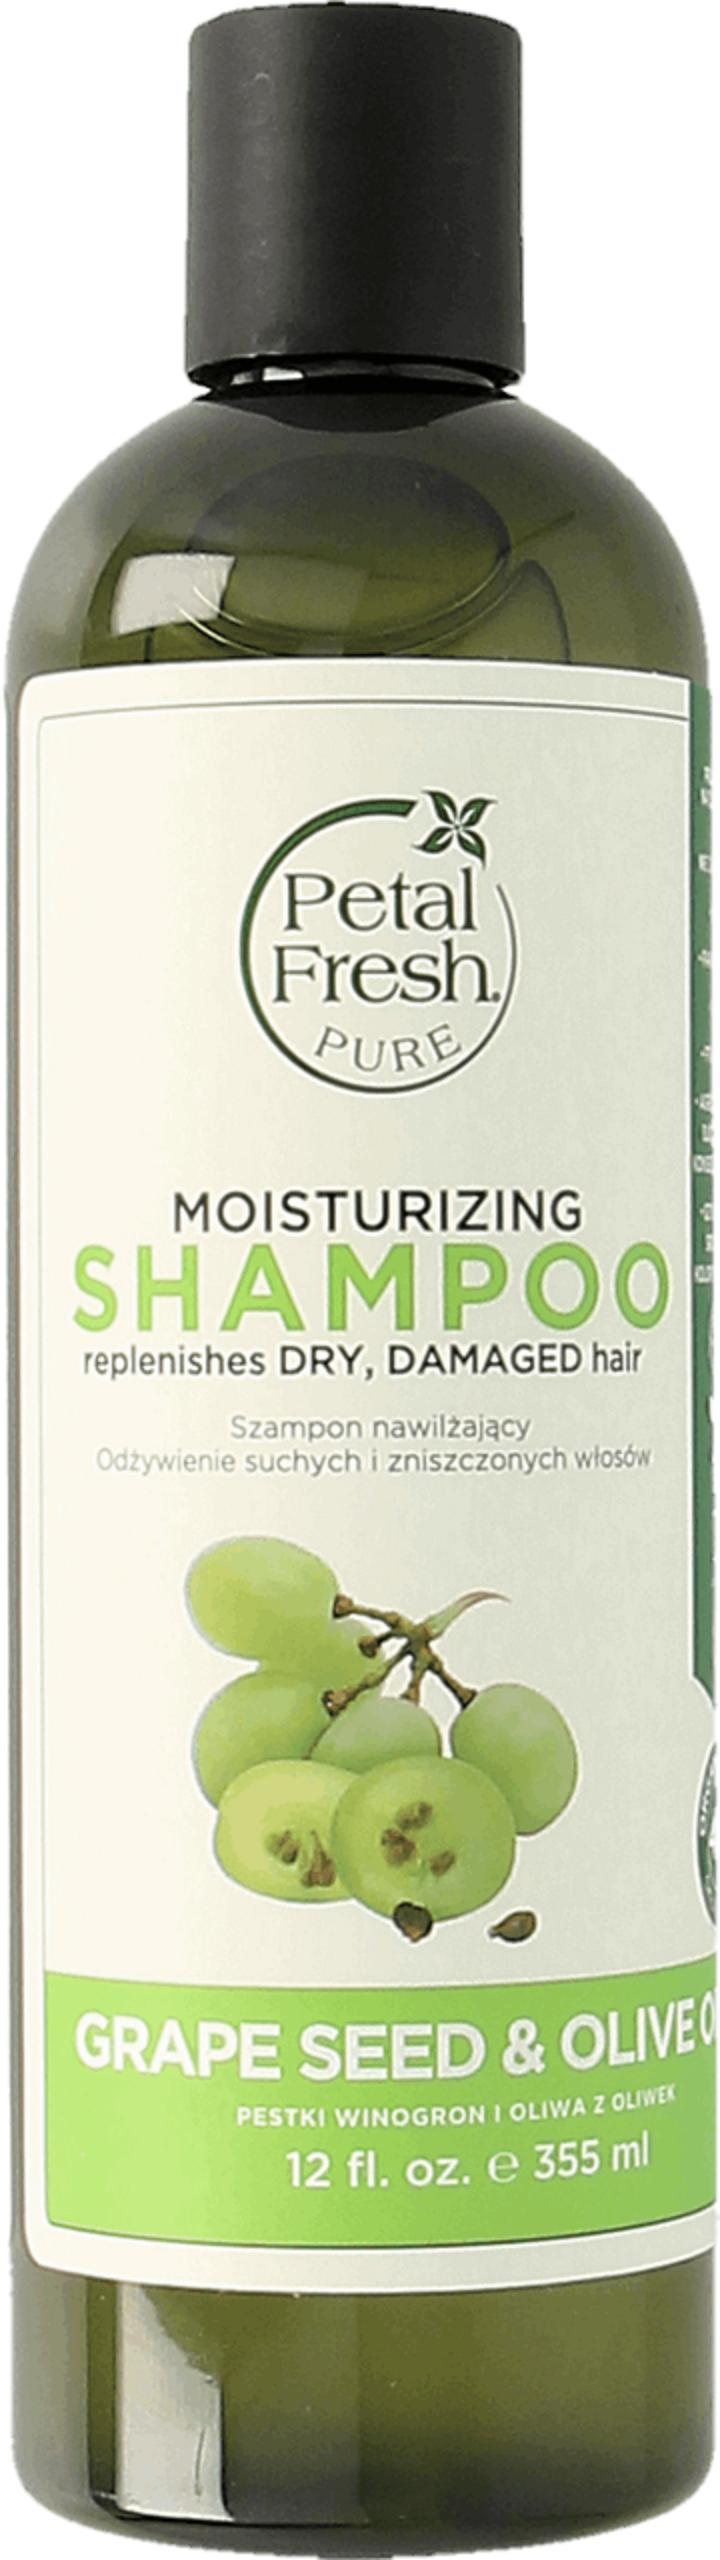 petal fresh szampon nawilżający pestki winogron